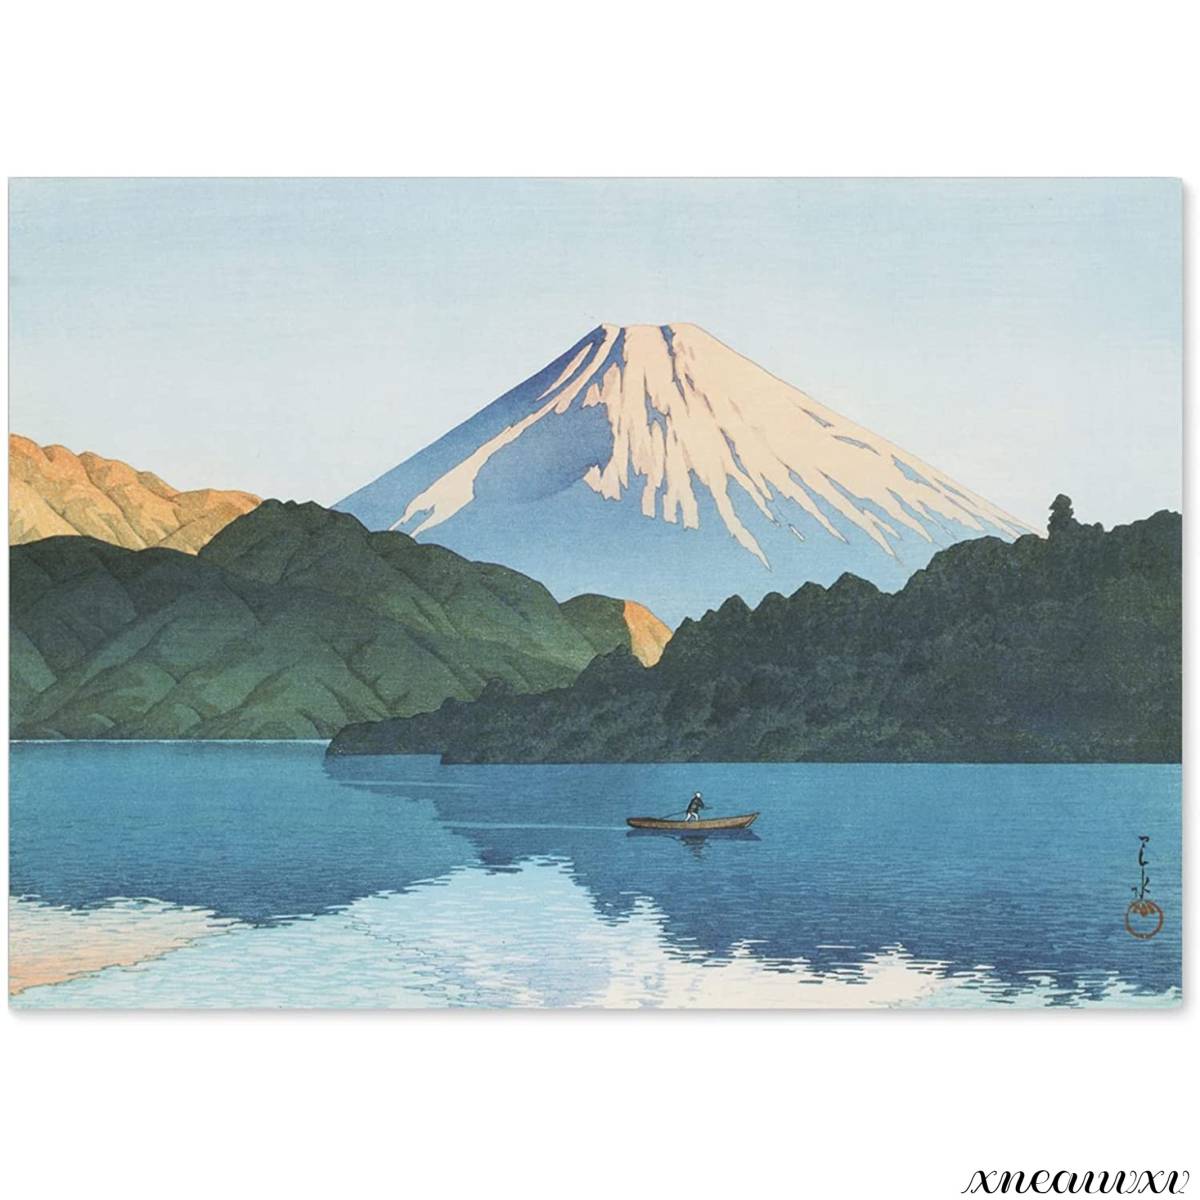 طباعة Kawase Hasui Hakone Lake Ashi مصنوعة في اليابان مقاس A3 لوحة استنساخ منظر طبيعي داخلي جدار معلق ديكور غرفة الديكور ملصق فني زخرفي, تلوين, أوكييو إي, مطبوعات, لوحات فنية لأماكن مشهورة